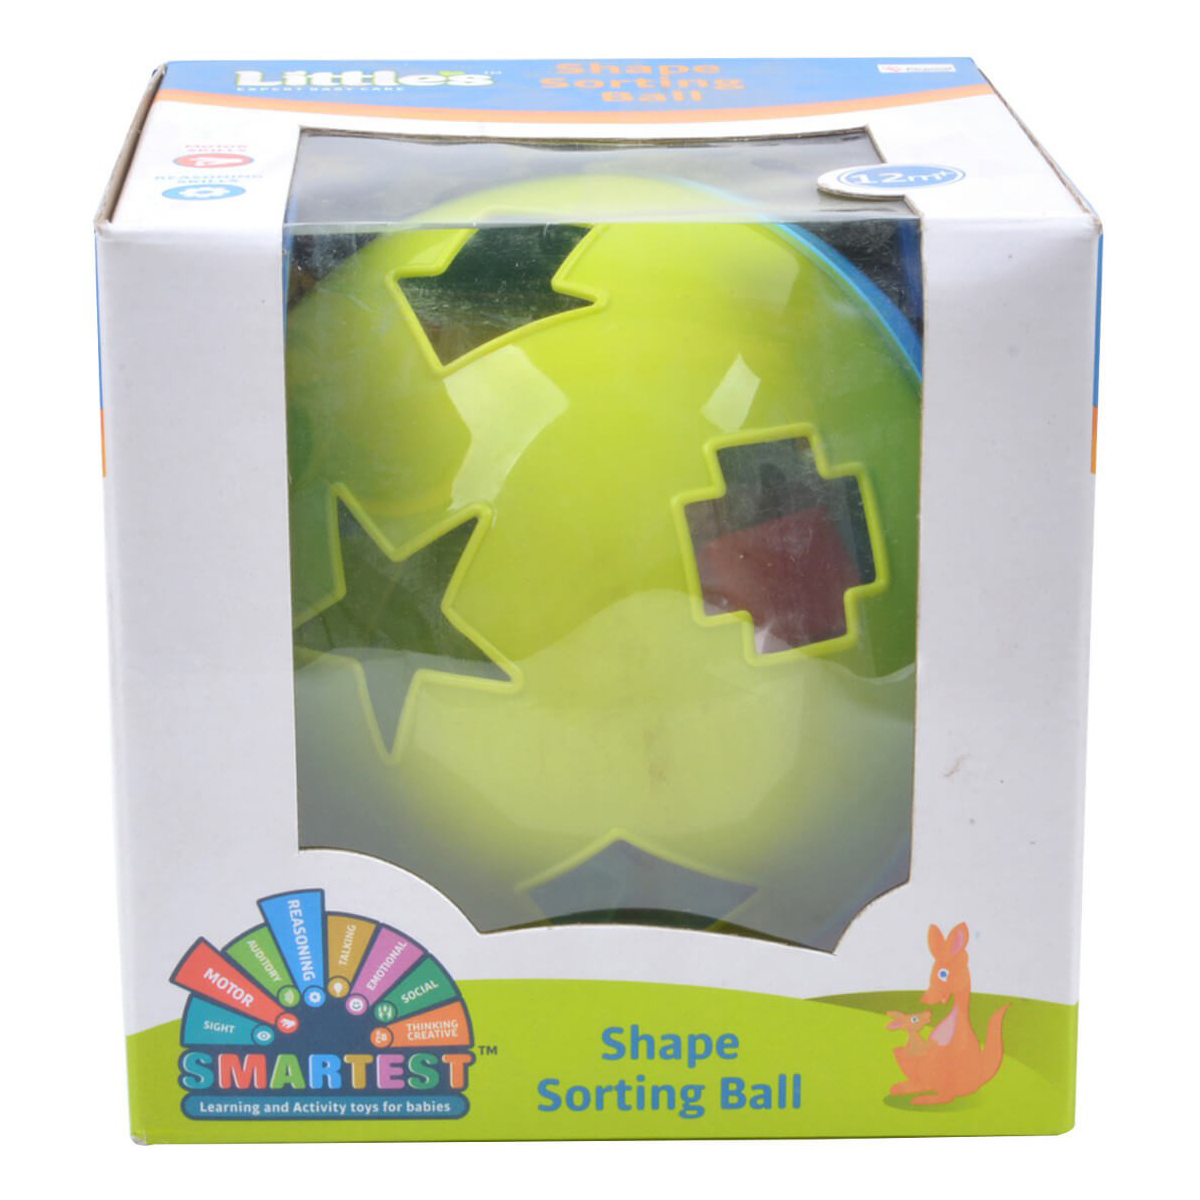 Littles Shape Sorting Ball Multi Color